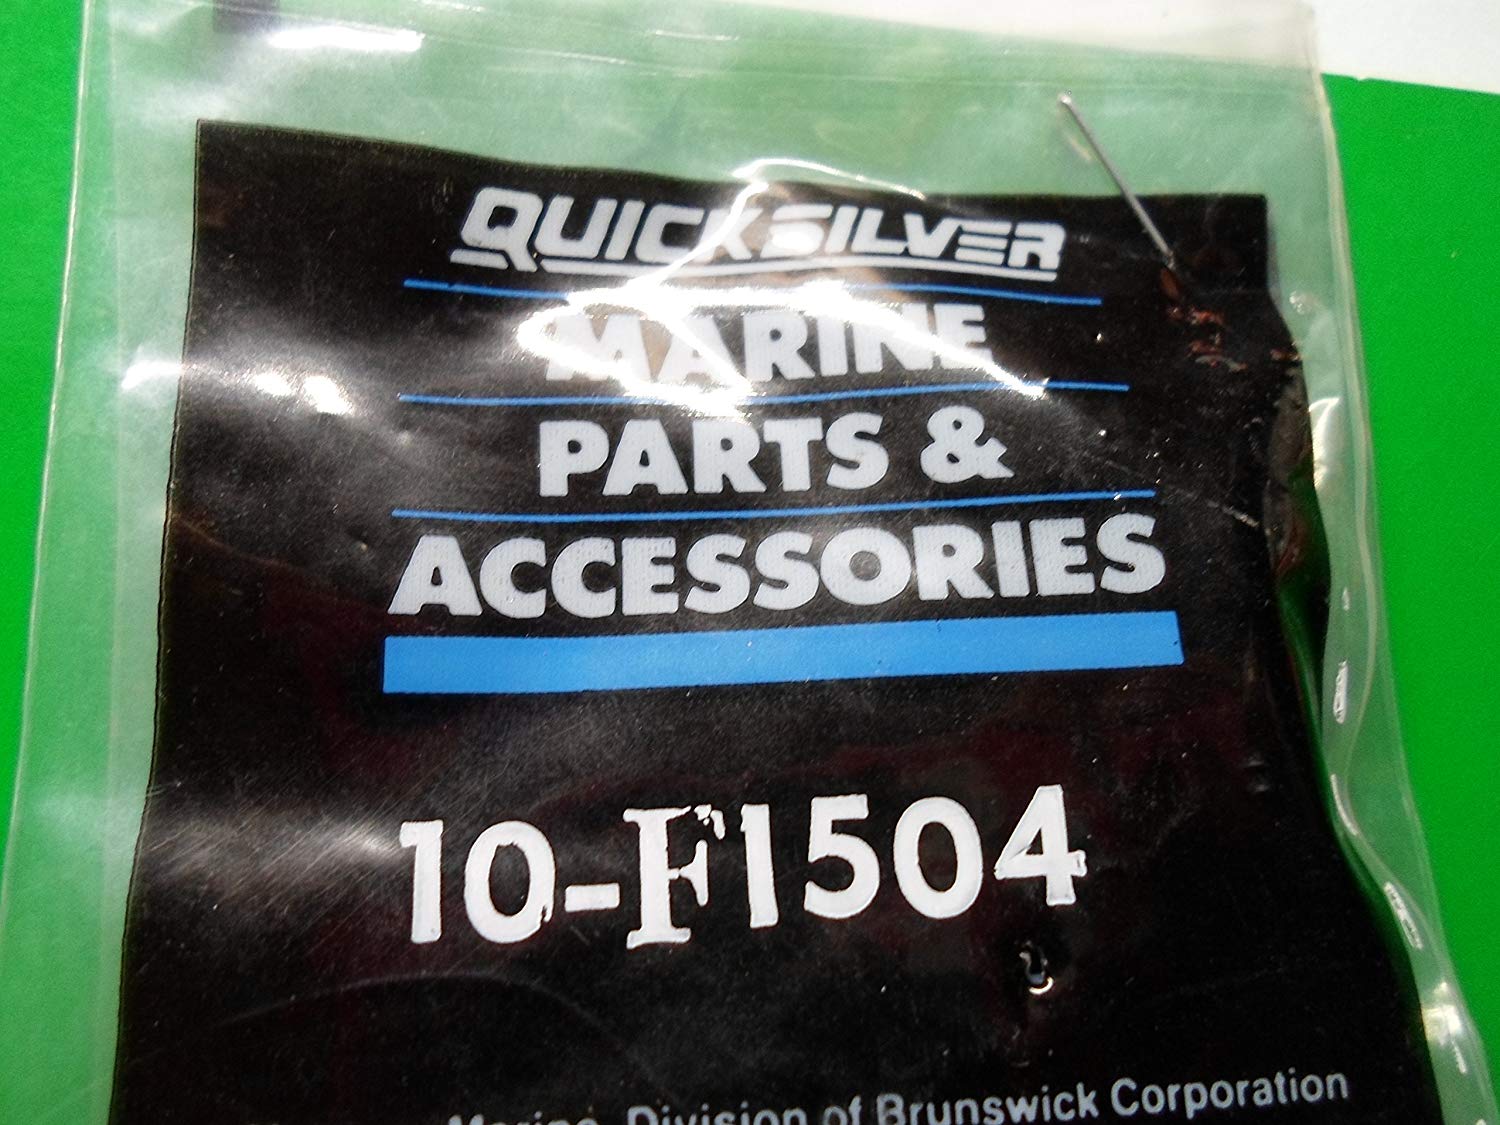 Quicksilver 10-F1504